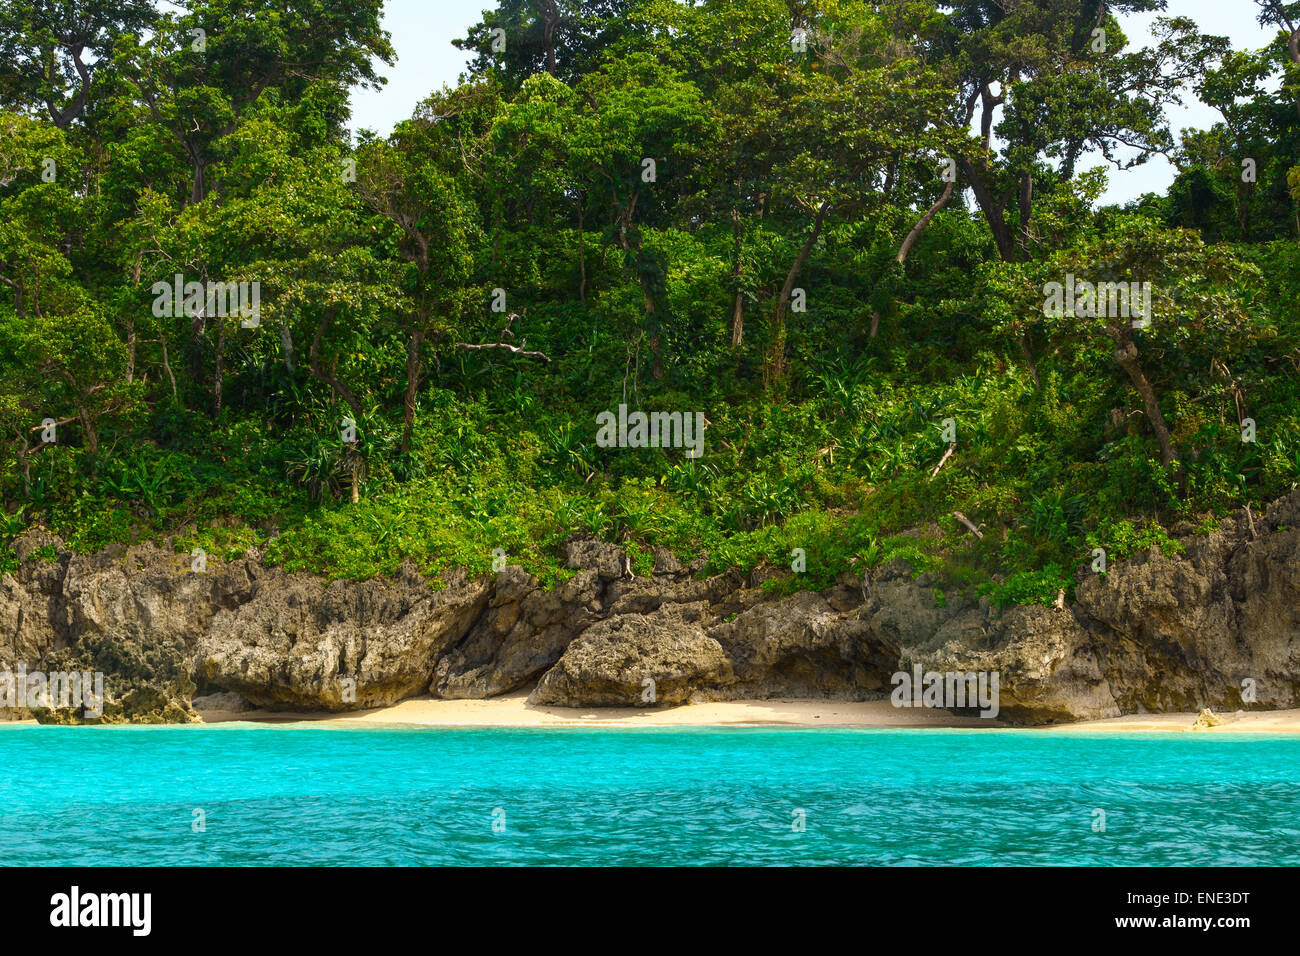 Grüne tropische Insel mit Palmen auf gelben Felsstrand mit Steinen im blauen Meer, Philippinen Boracay island Stockfoto